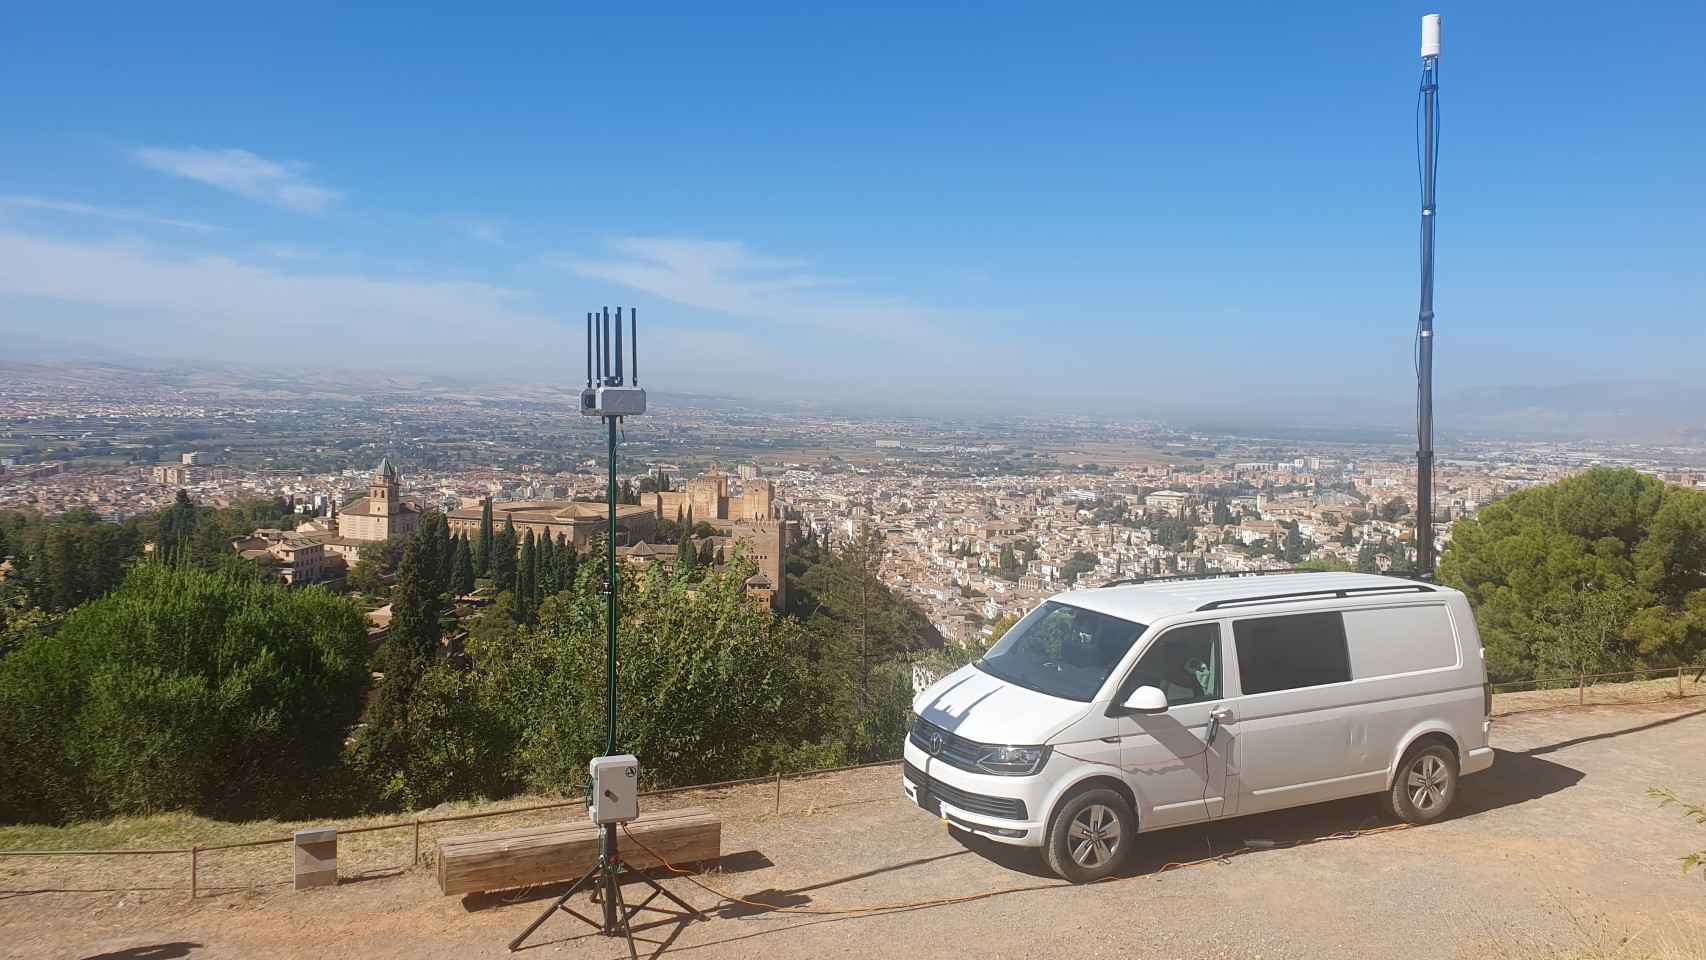 Despliegue SIGLO en la Cumbre de Granada, con la Alhambra de fondo